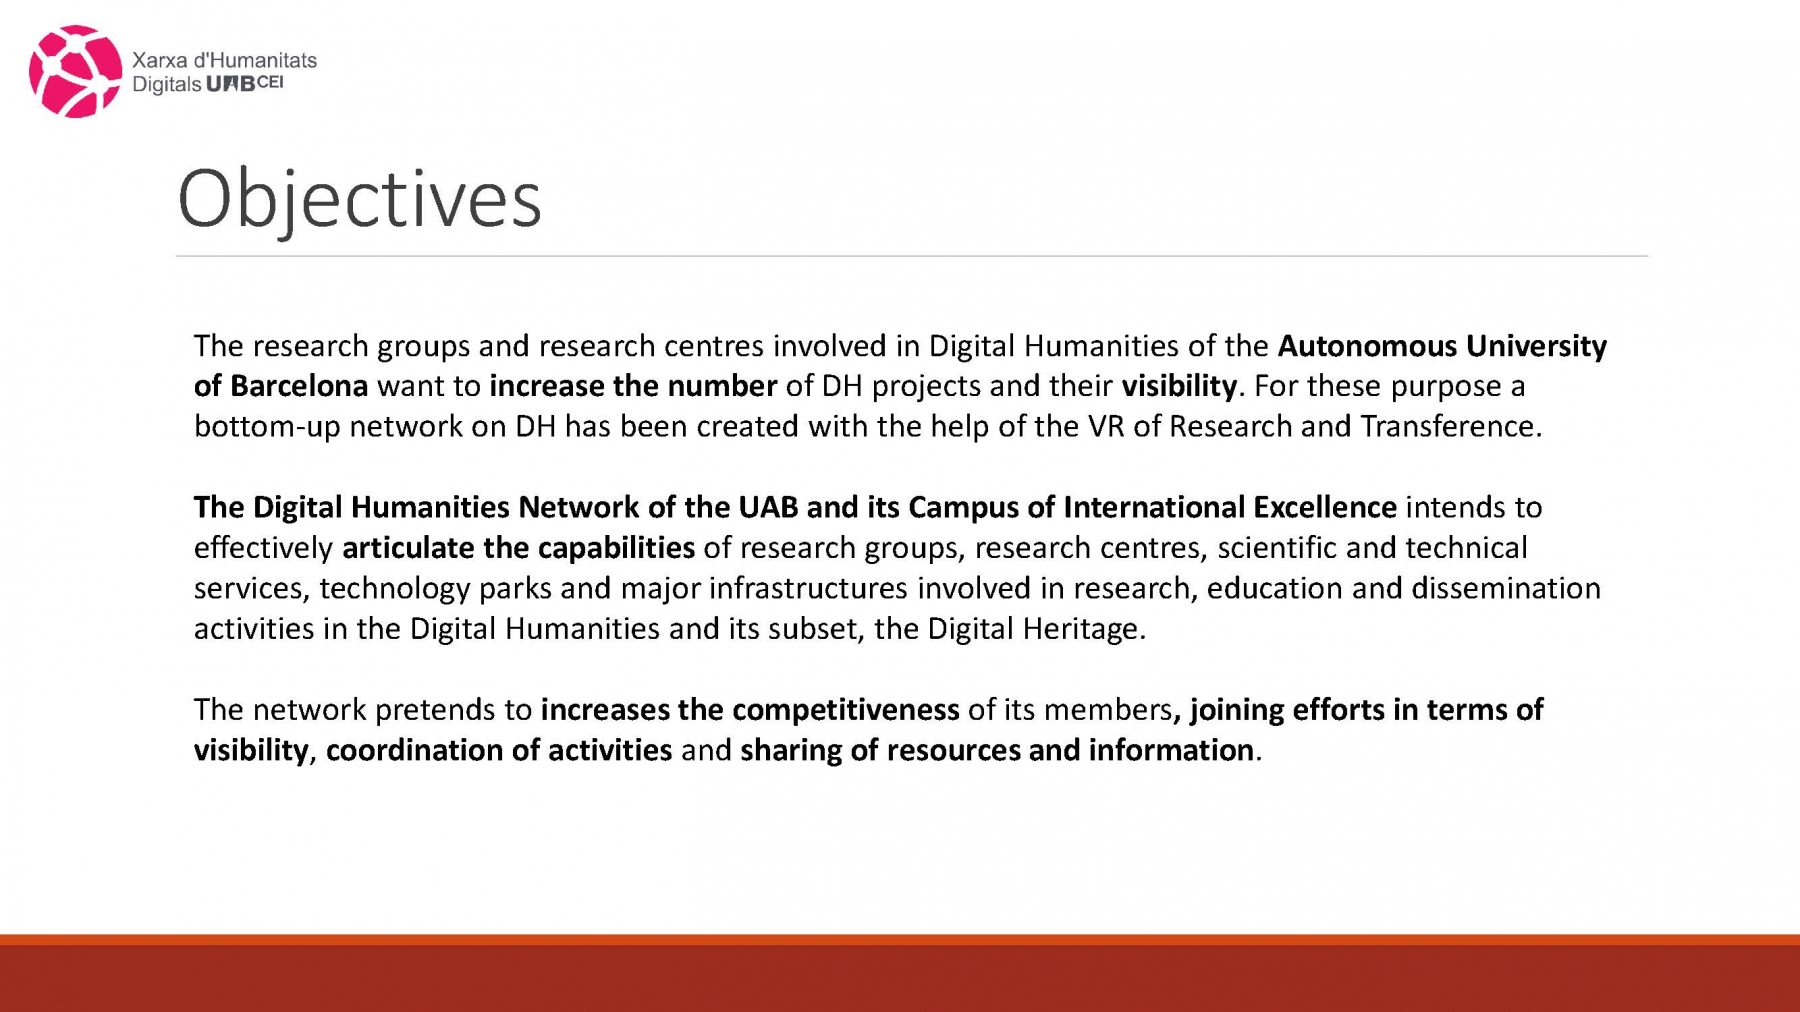 Digital Humanities Network - UAB (pres. by Oriol Vicente)